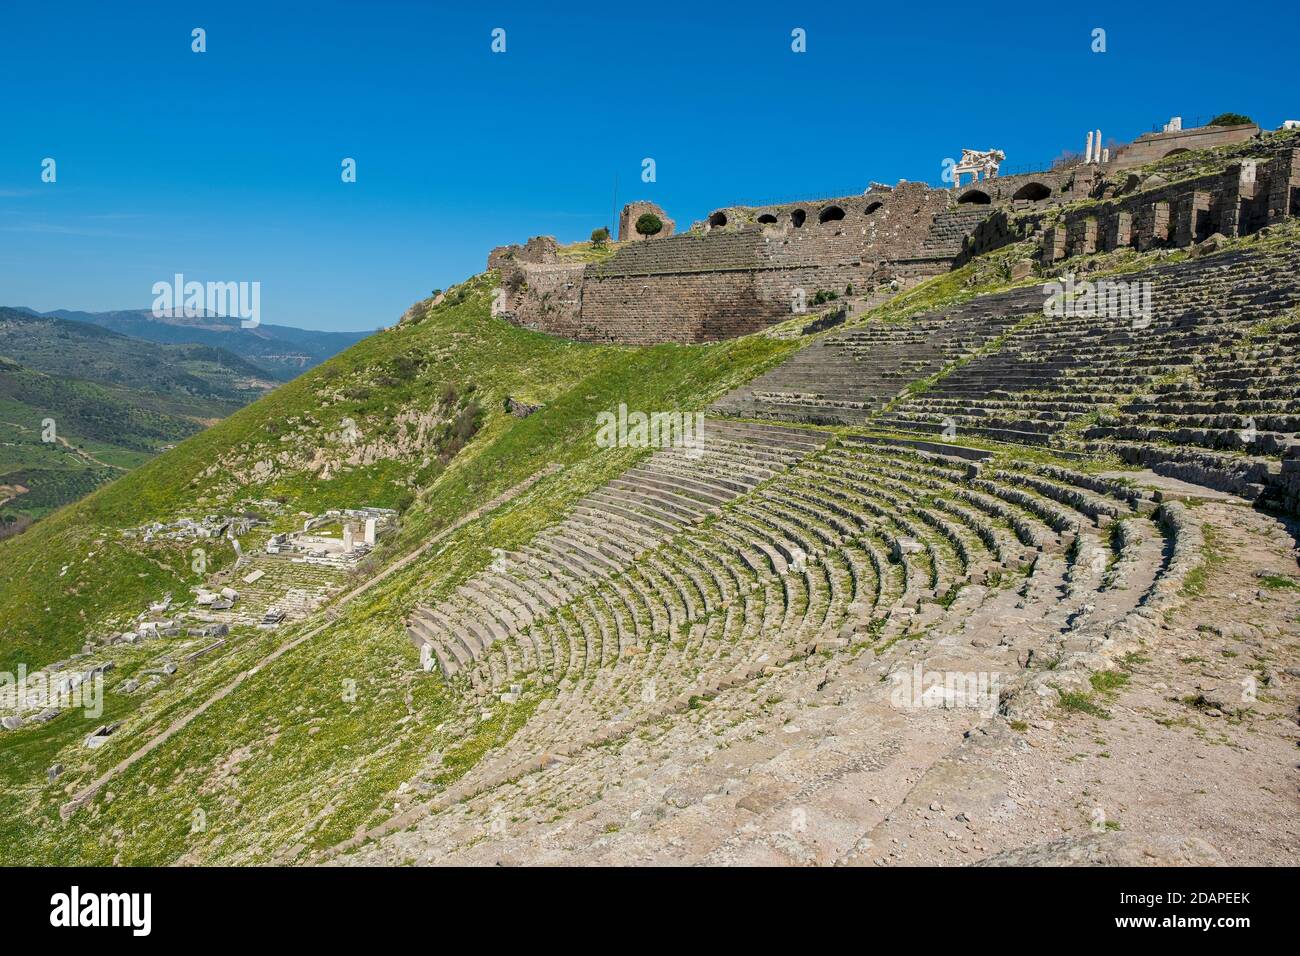 Amphithéâtre romain (amphithéâtre) dans les ruines de l'ancienne ville de Pergame (Pergame), Turquie. Banque D'Images